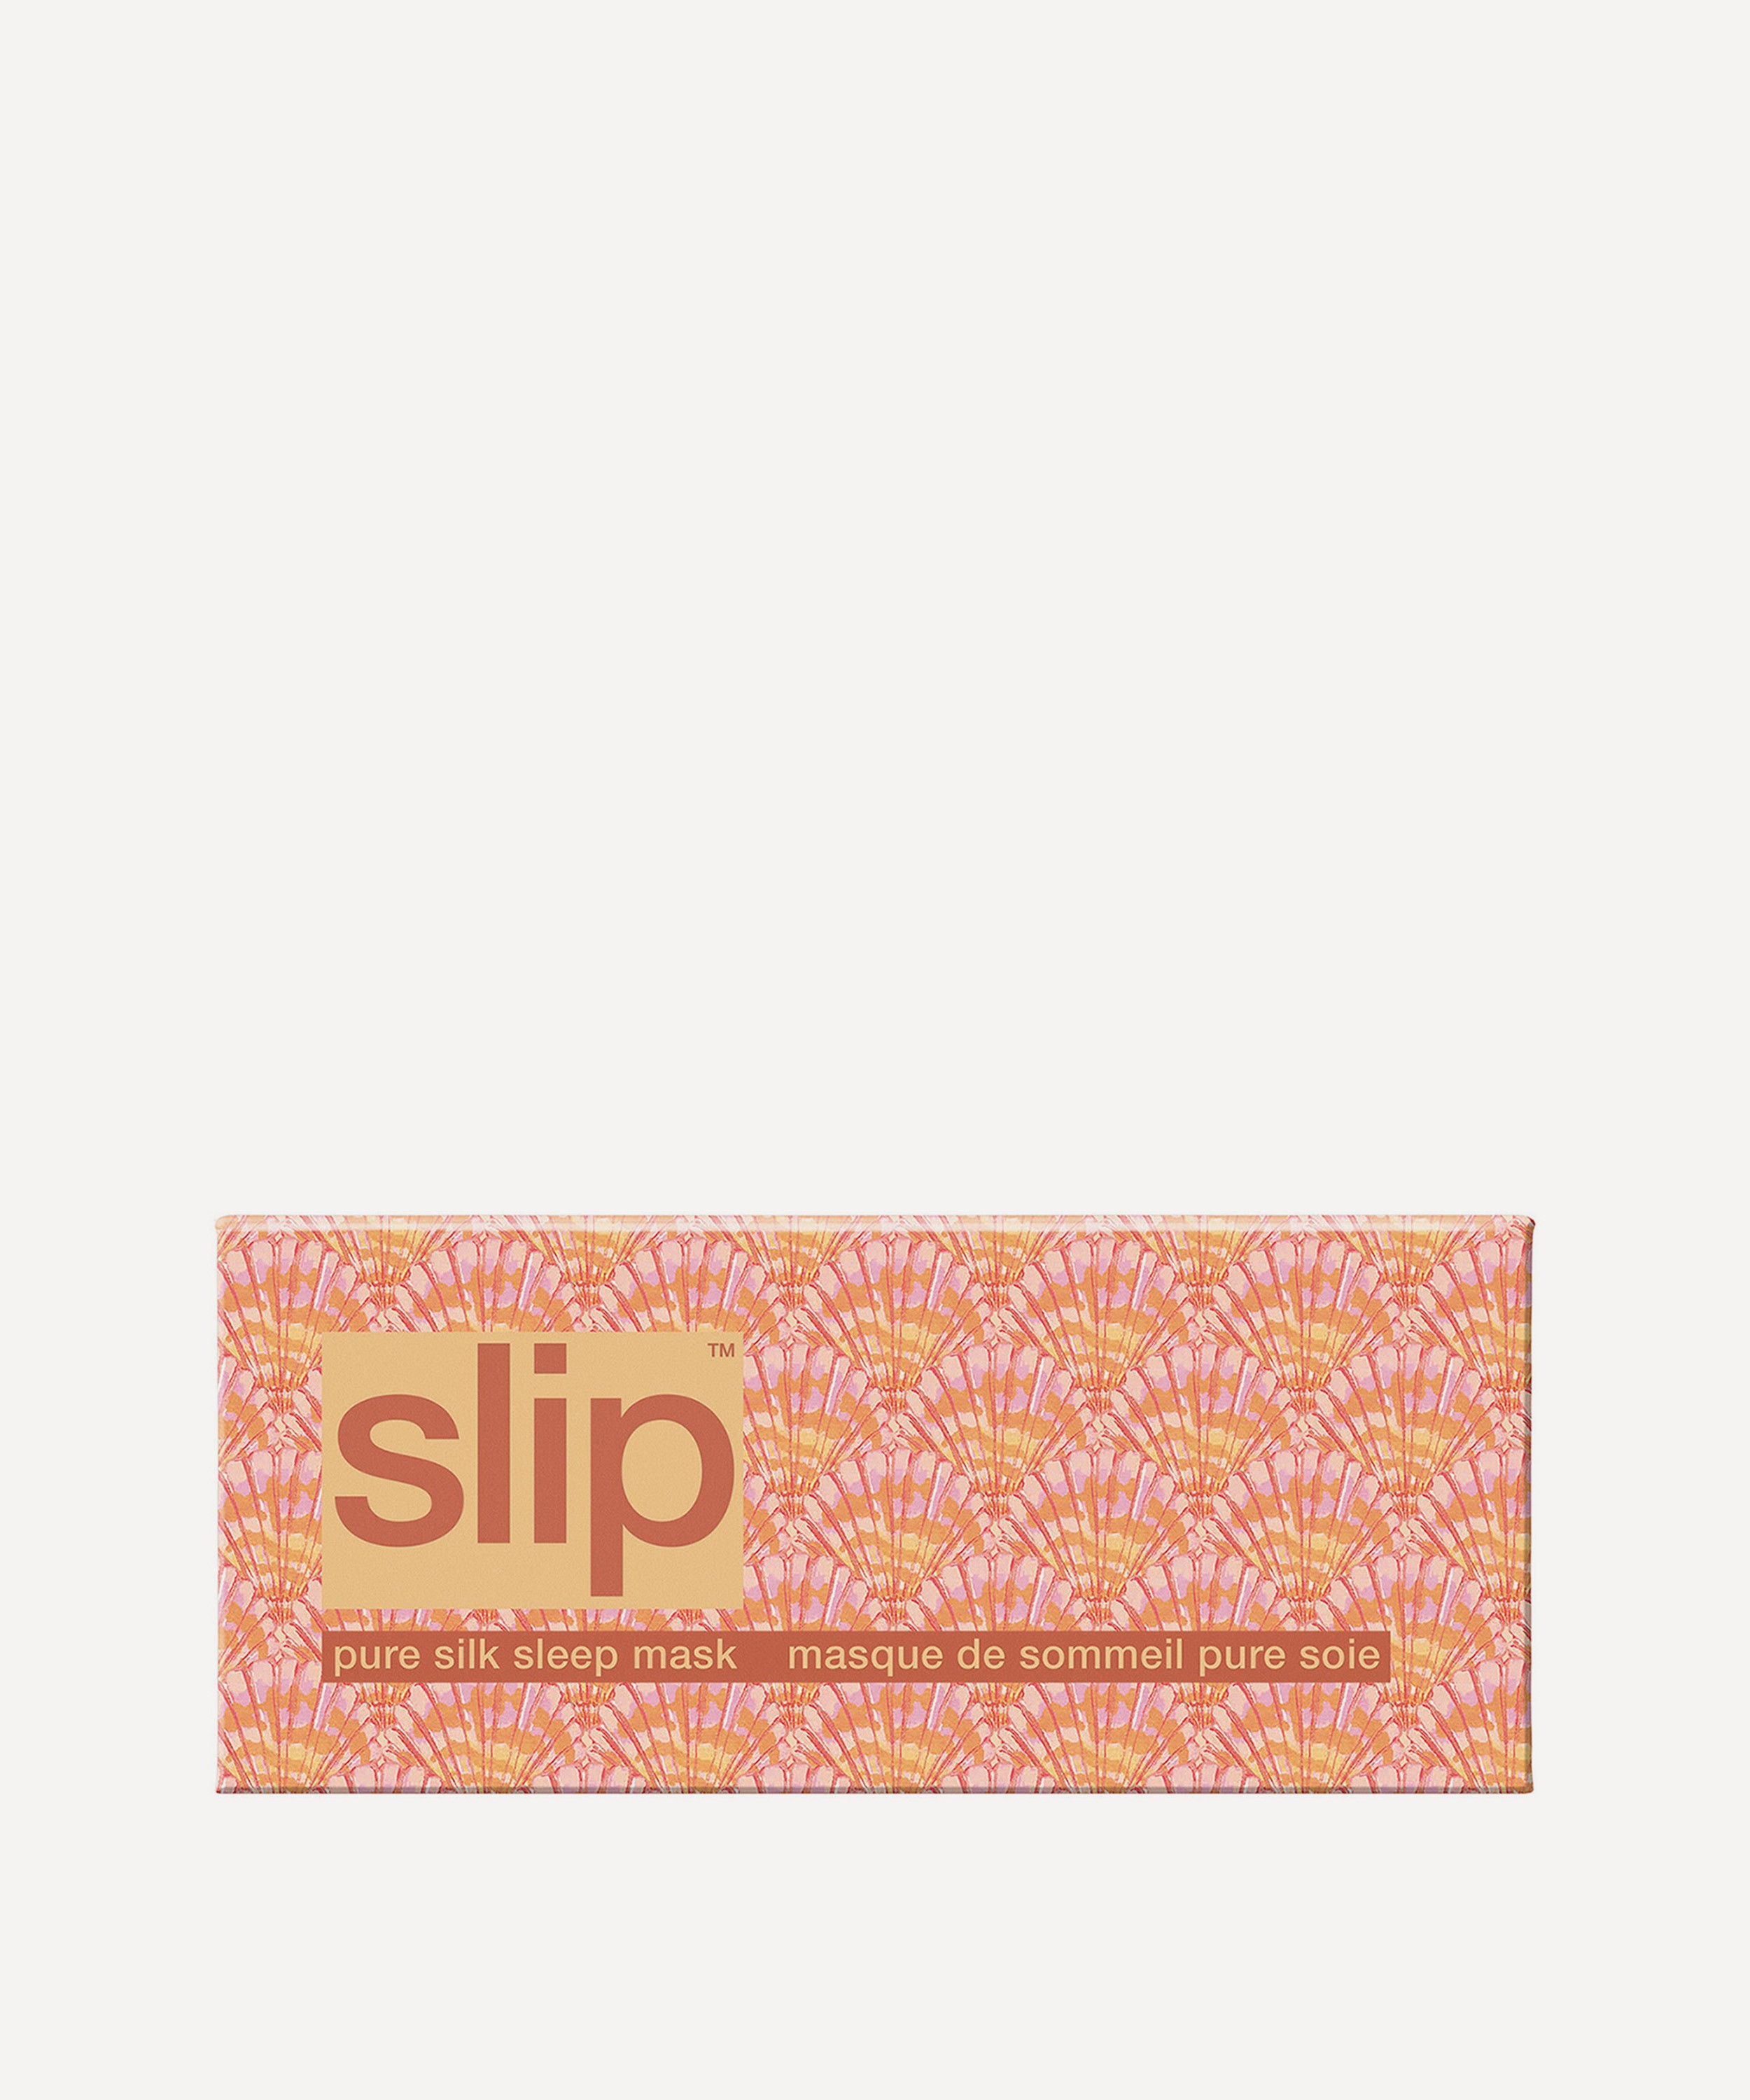 Slip - Nautilus Silk Sleep Mask image number 3